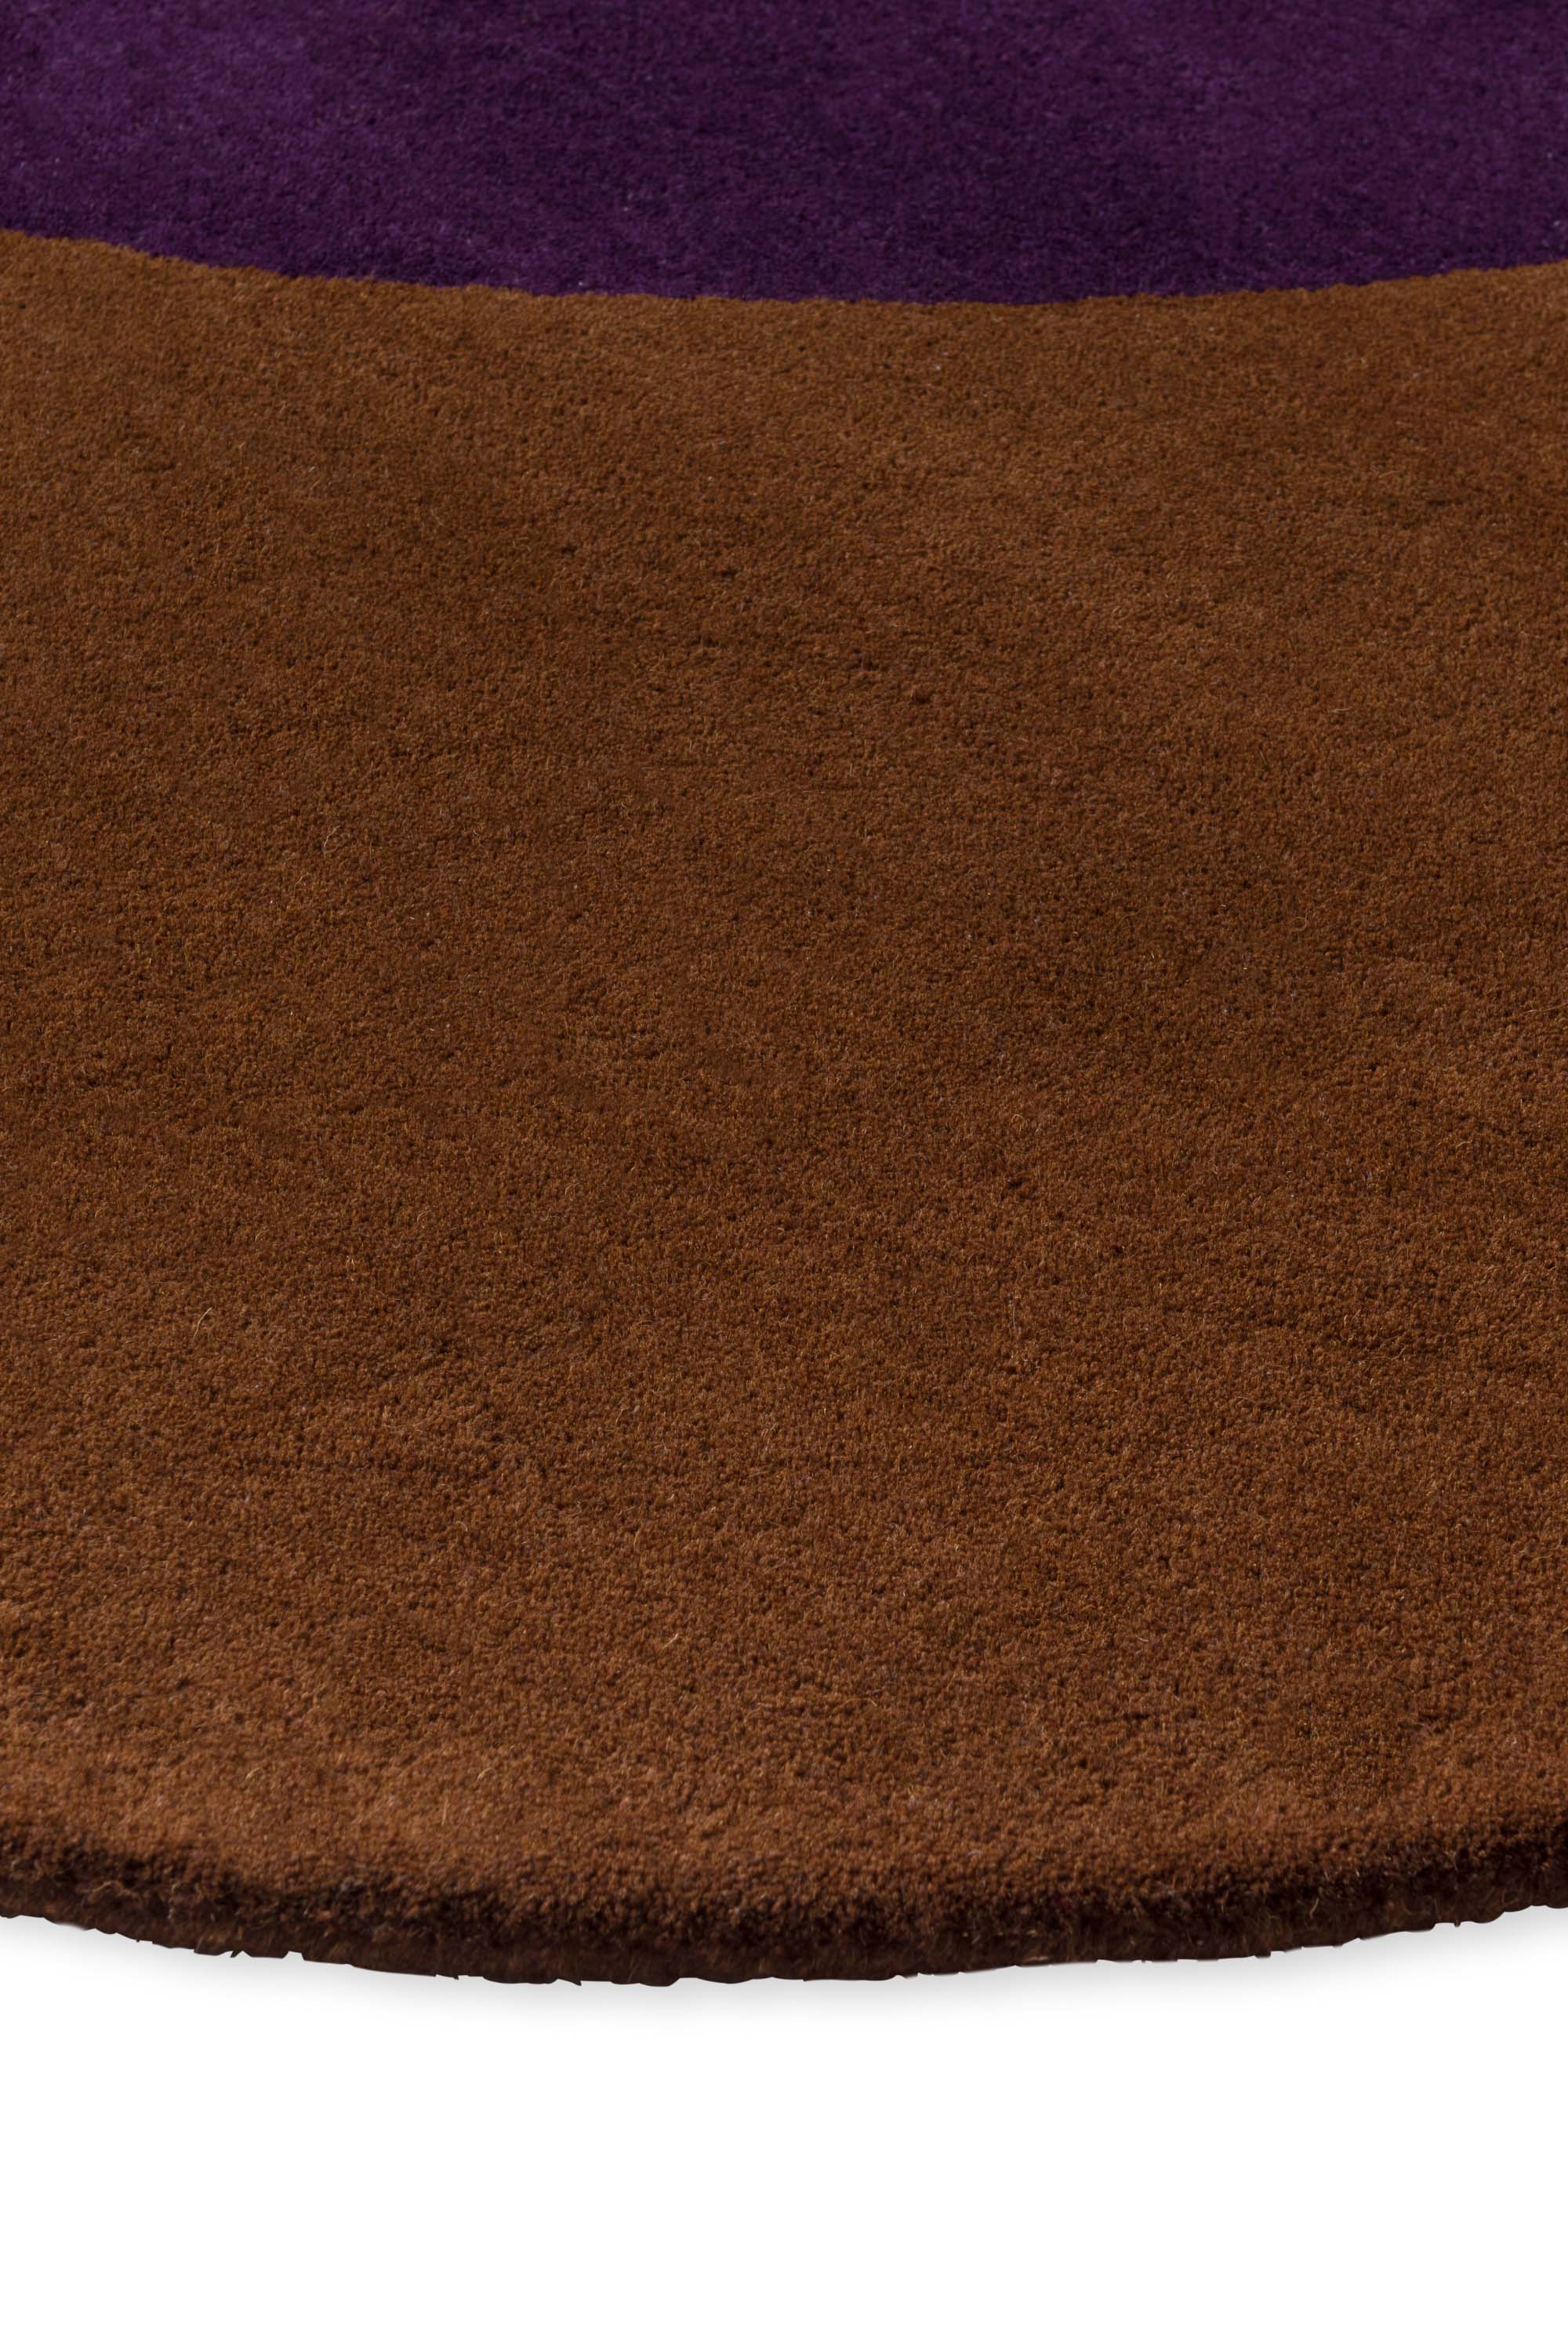 Brown flower shaped rug